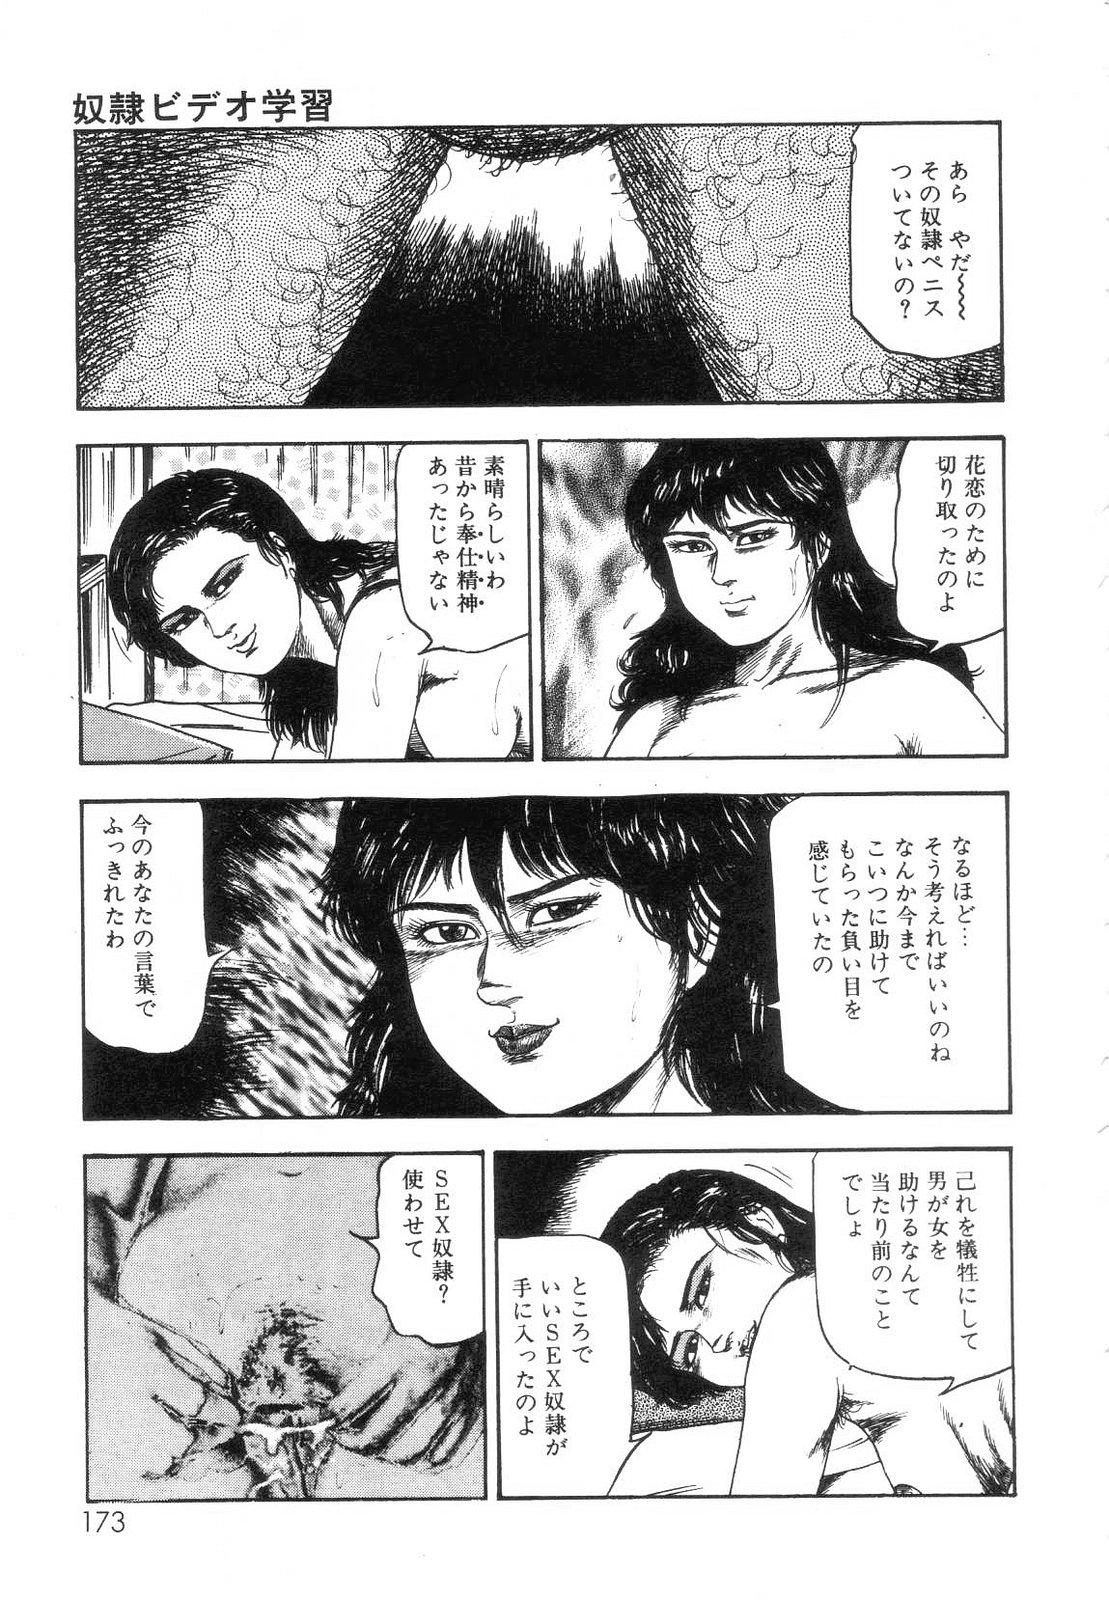 Shiro no Mokushiroku Vol. 7 - Shiiku Ningyou Erika no Shou 174